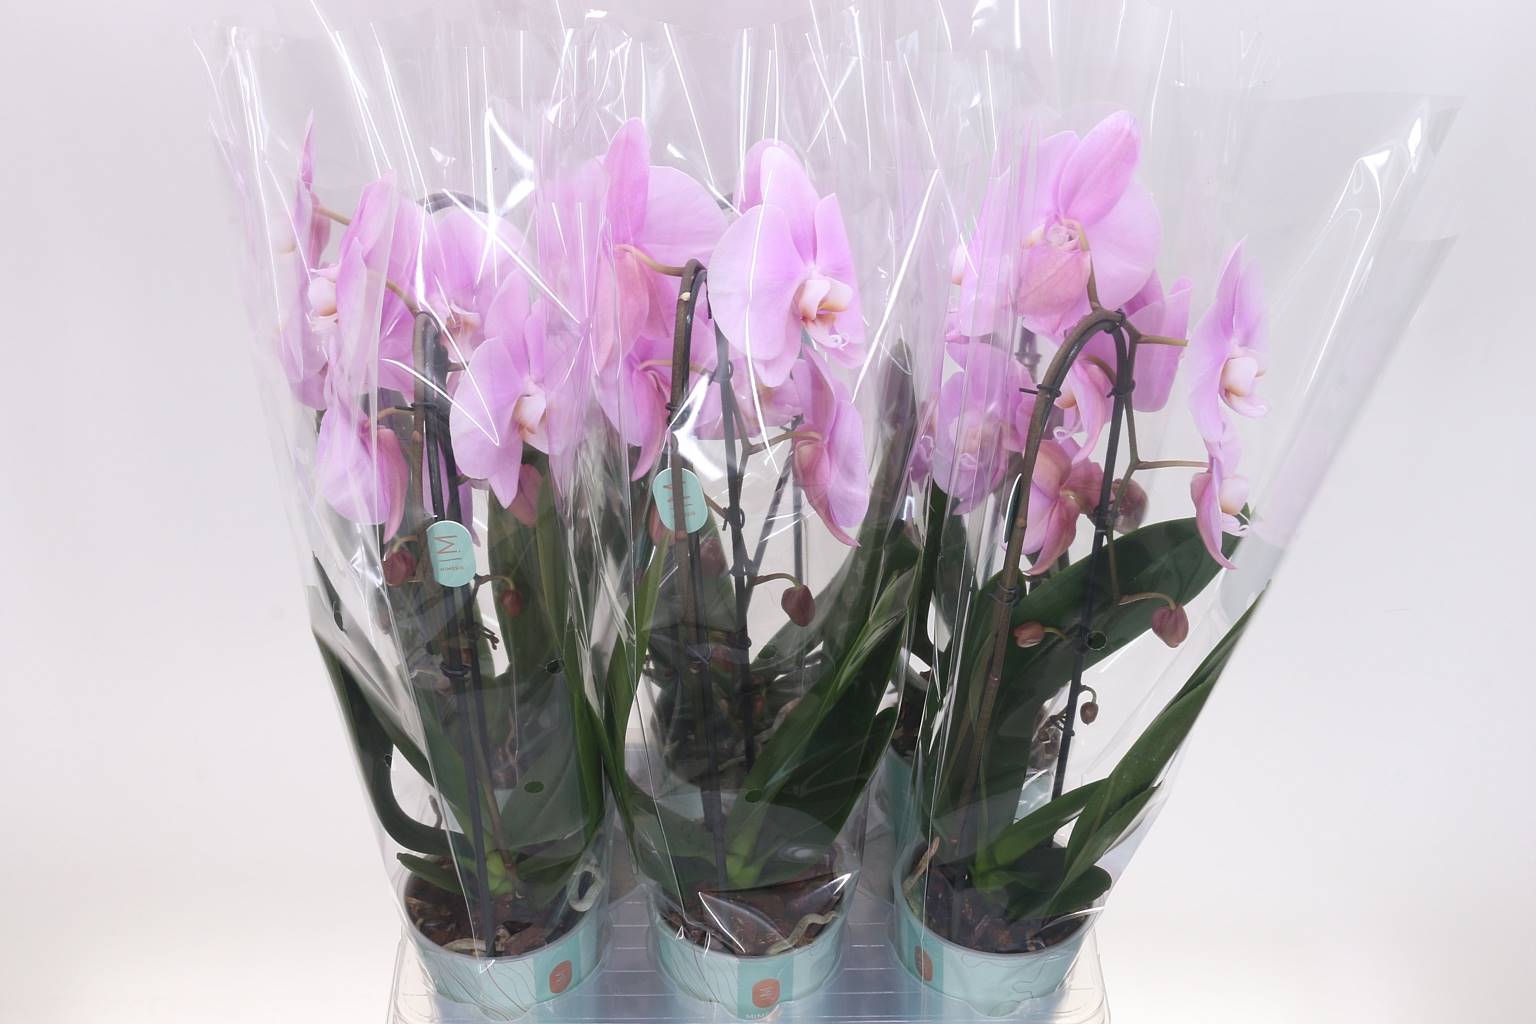 Фаленопсис Розовый Наоми 1 голос ( Phalaenopsis Flow Pink Naomi 1 stem ) W 12 см H 45 см